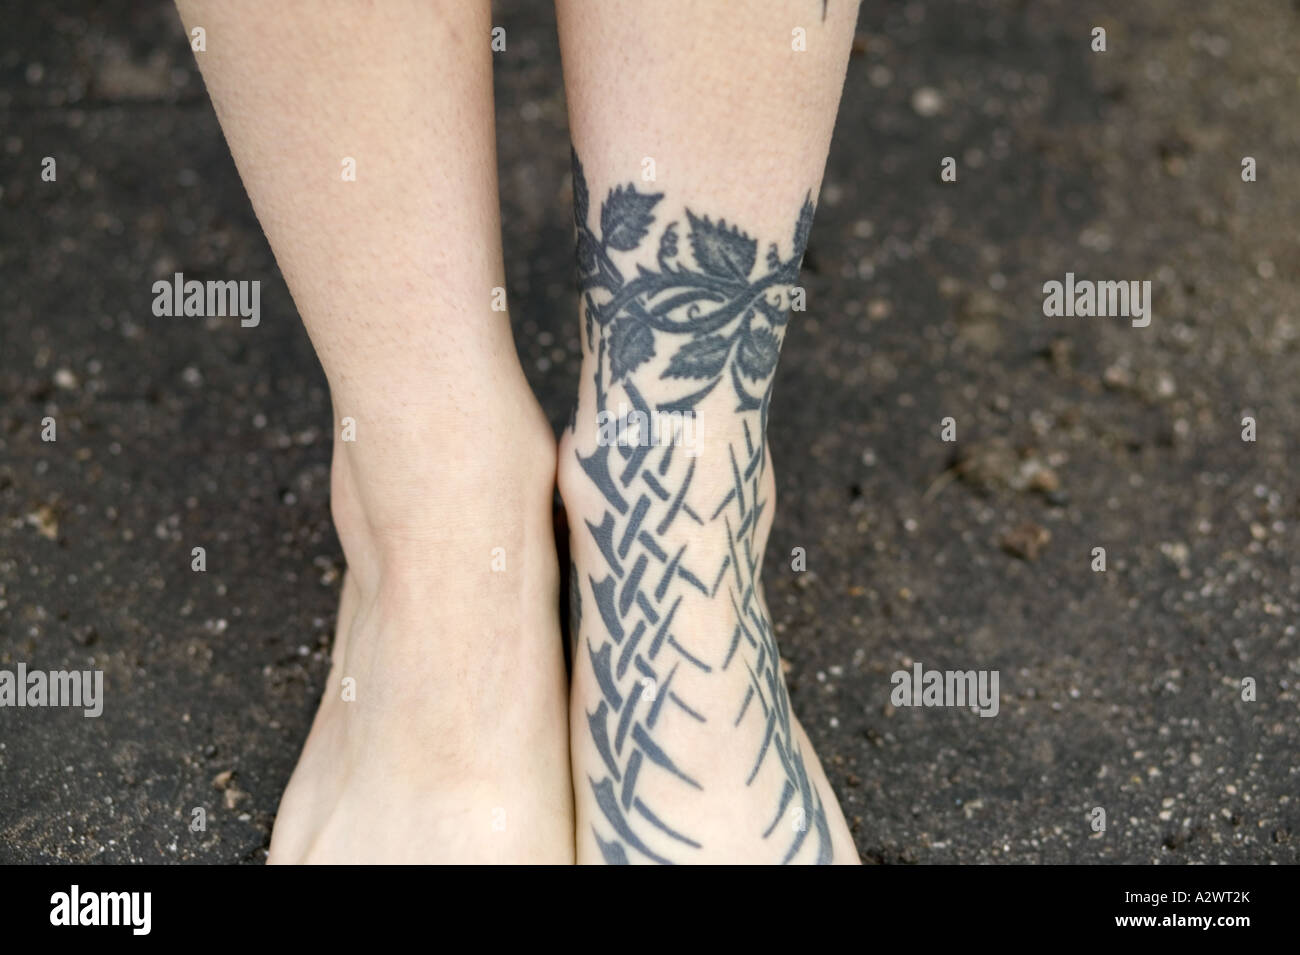 50 Small Foot Tattoo Ideas to Show Off | CafeMom.com